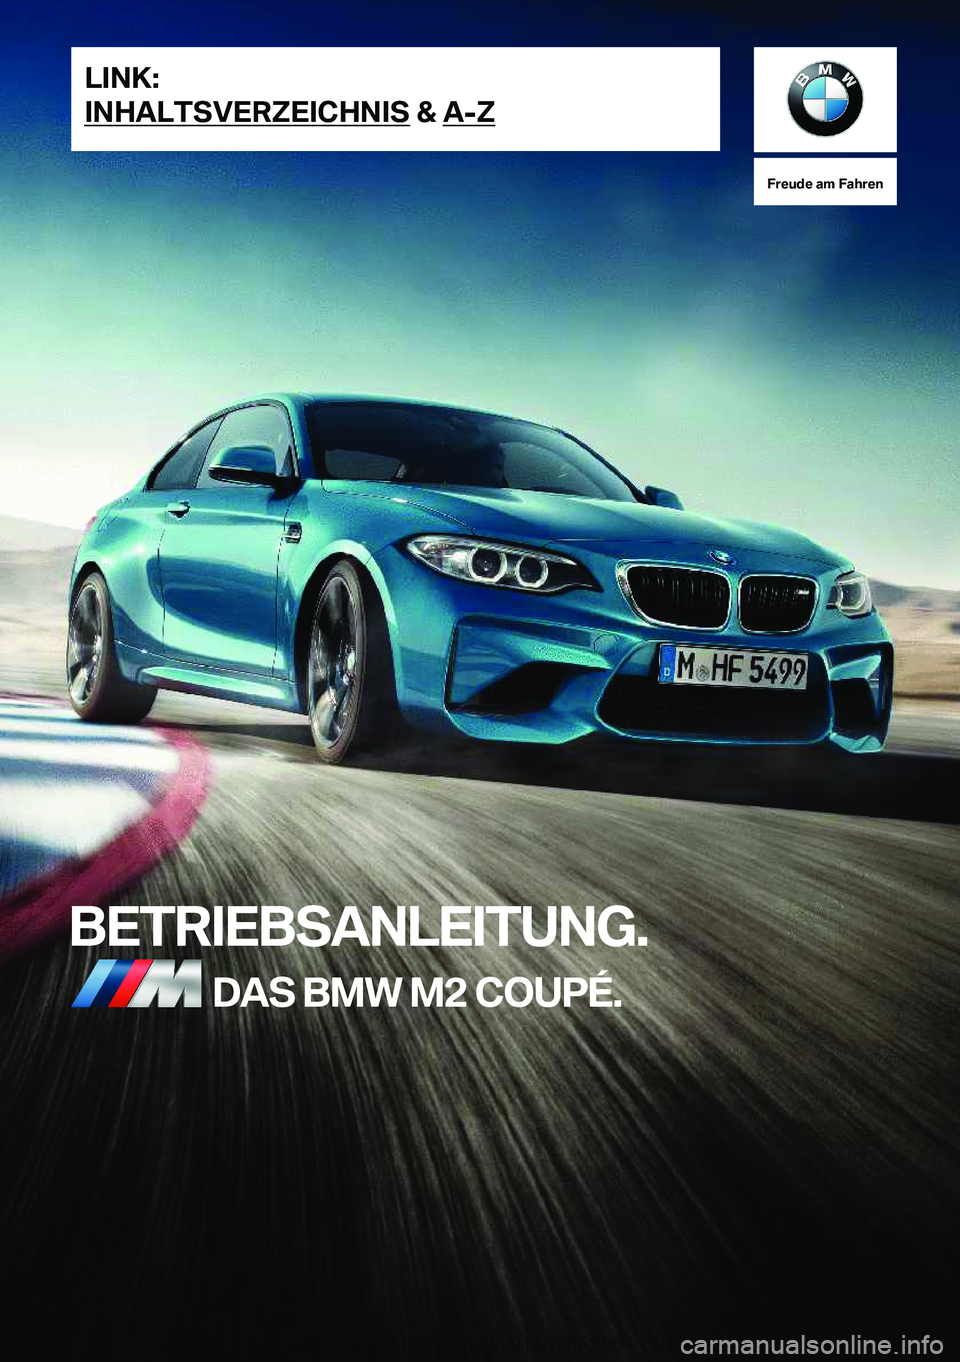 BMW M2 2018  Betriebsanleitungen (in German) �F�r�e�u�d�e��a�m��F�a�h�r�e�n
�B�E�T�R�I�E�B�S�A�N�L�E�I�T�U�N�G�.�D�A�S��B�M�W��M�2��C�O�U�P�